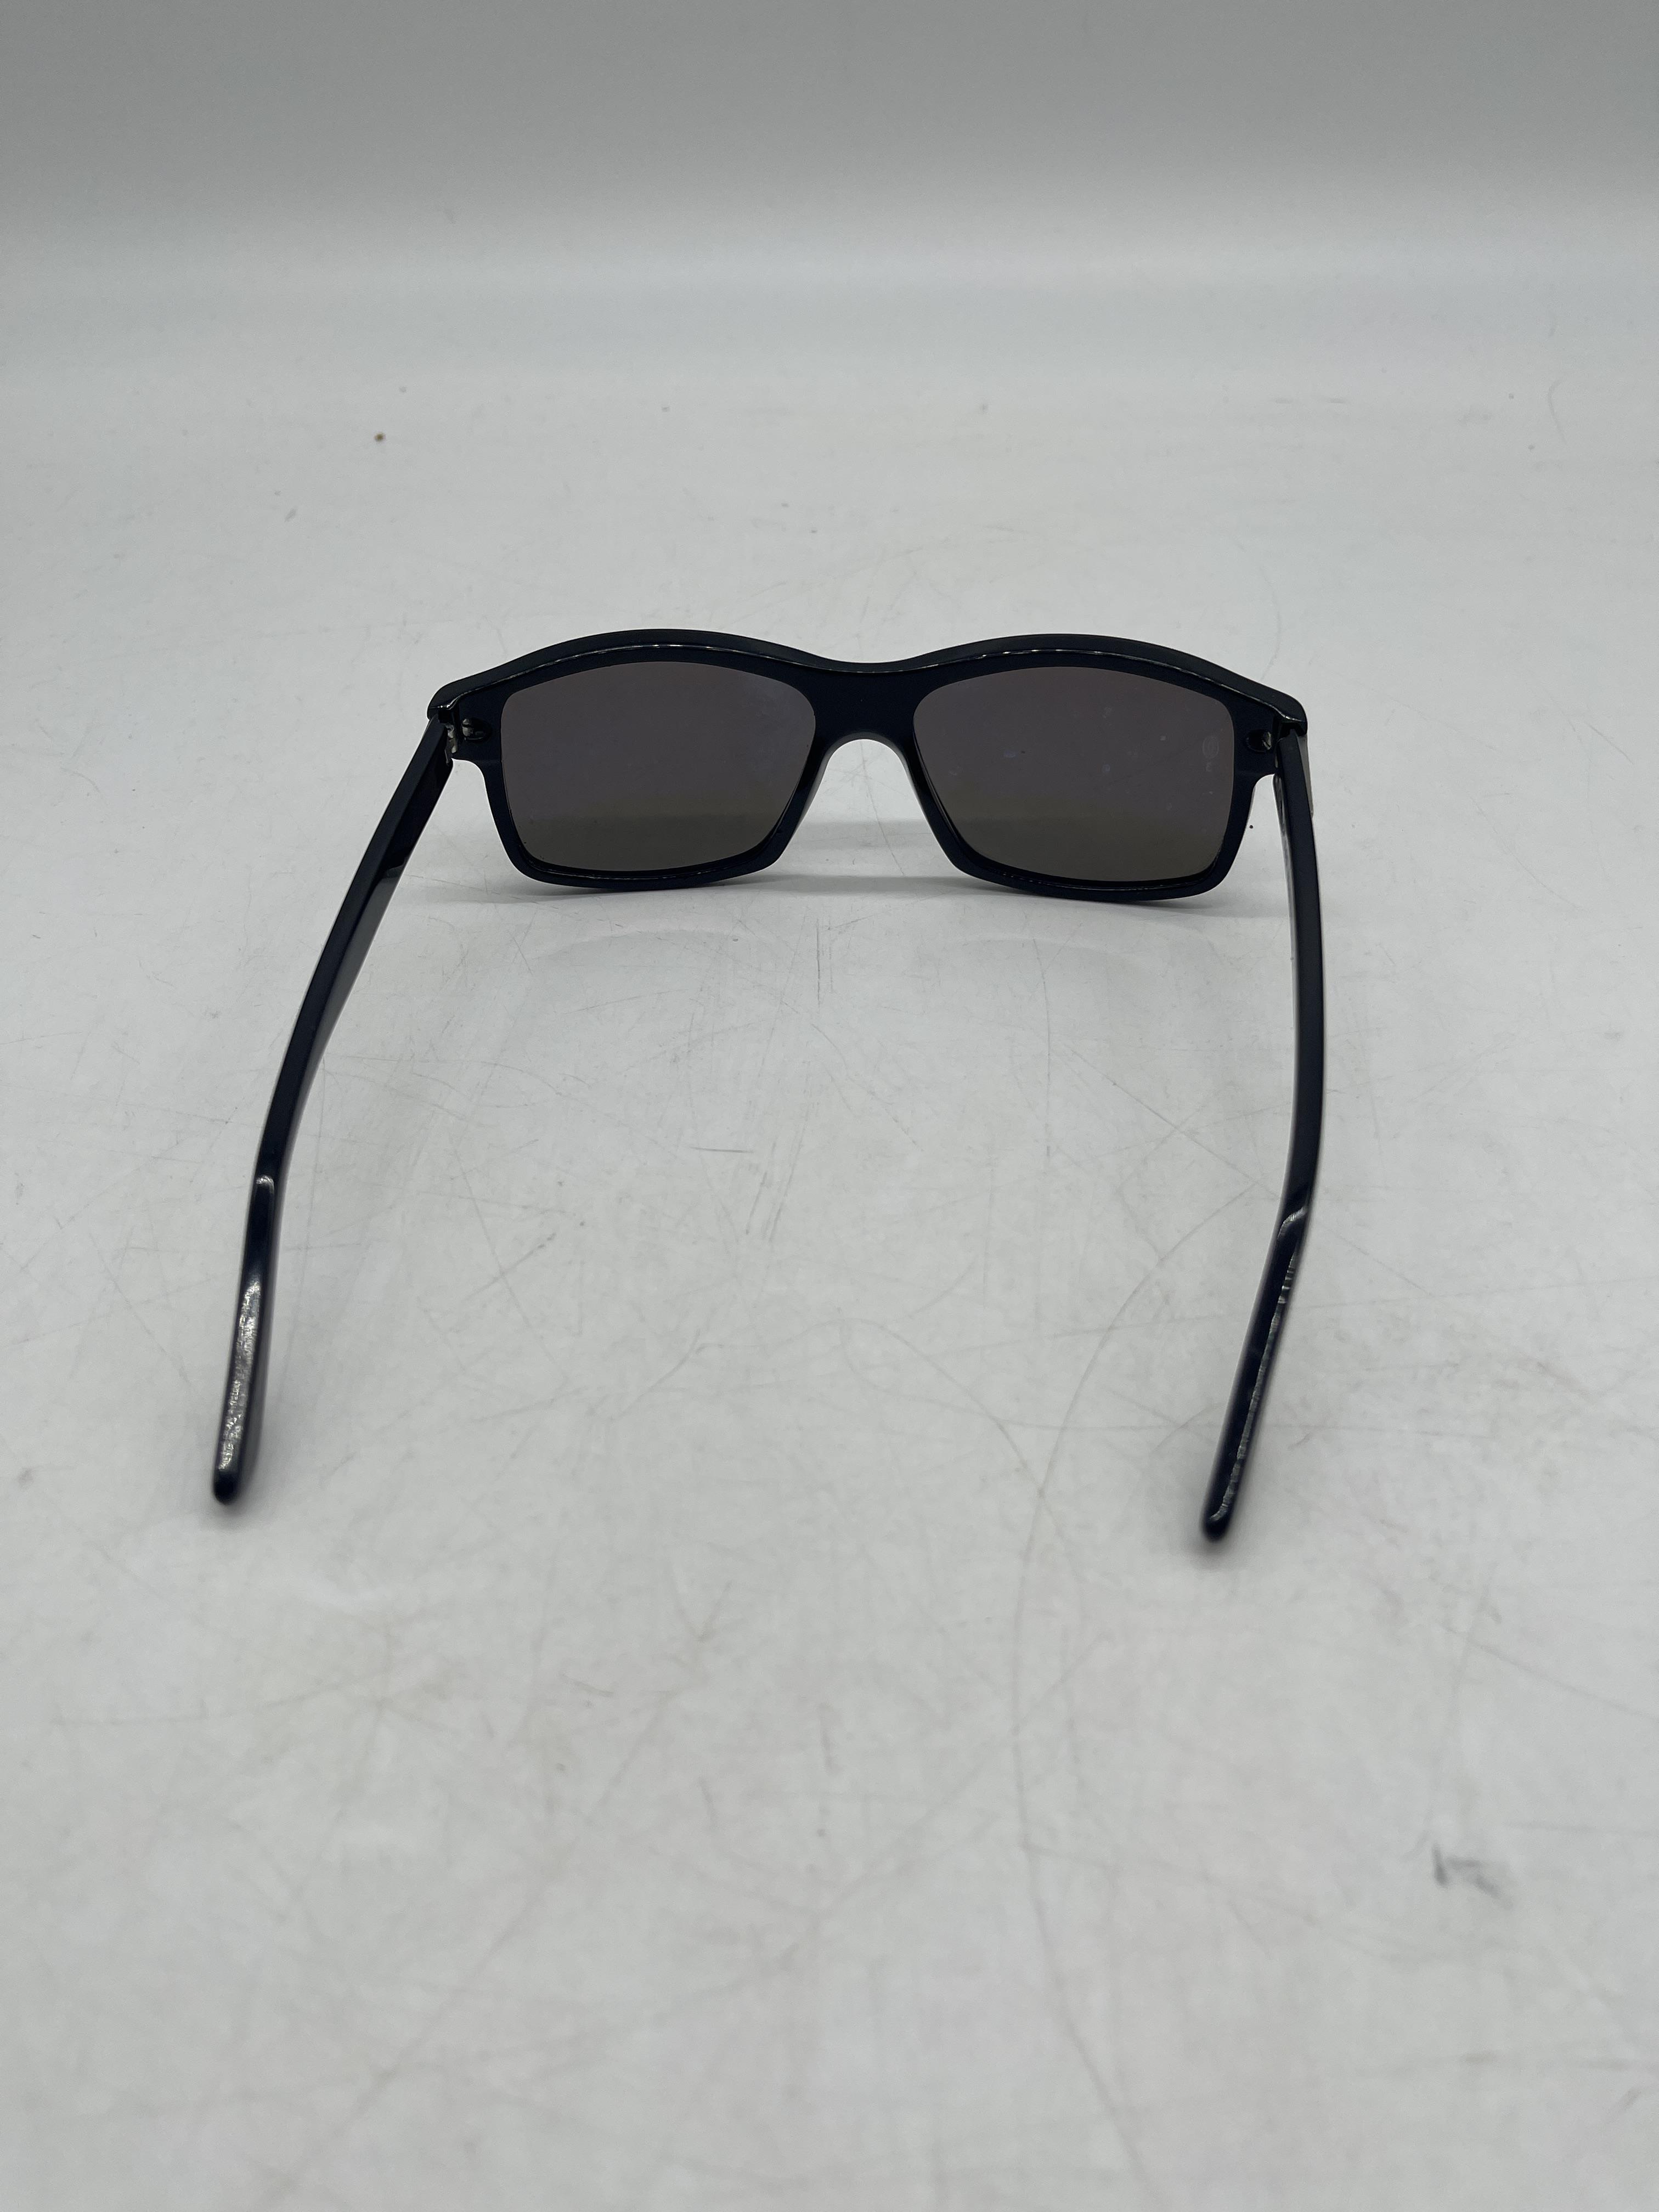 Cartier Santos De Cartier Square Tinted Sunglasses - Image 5 of 14